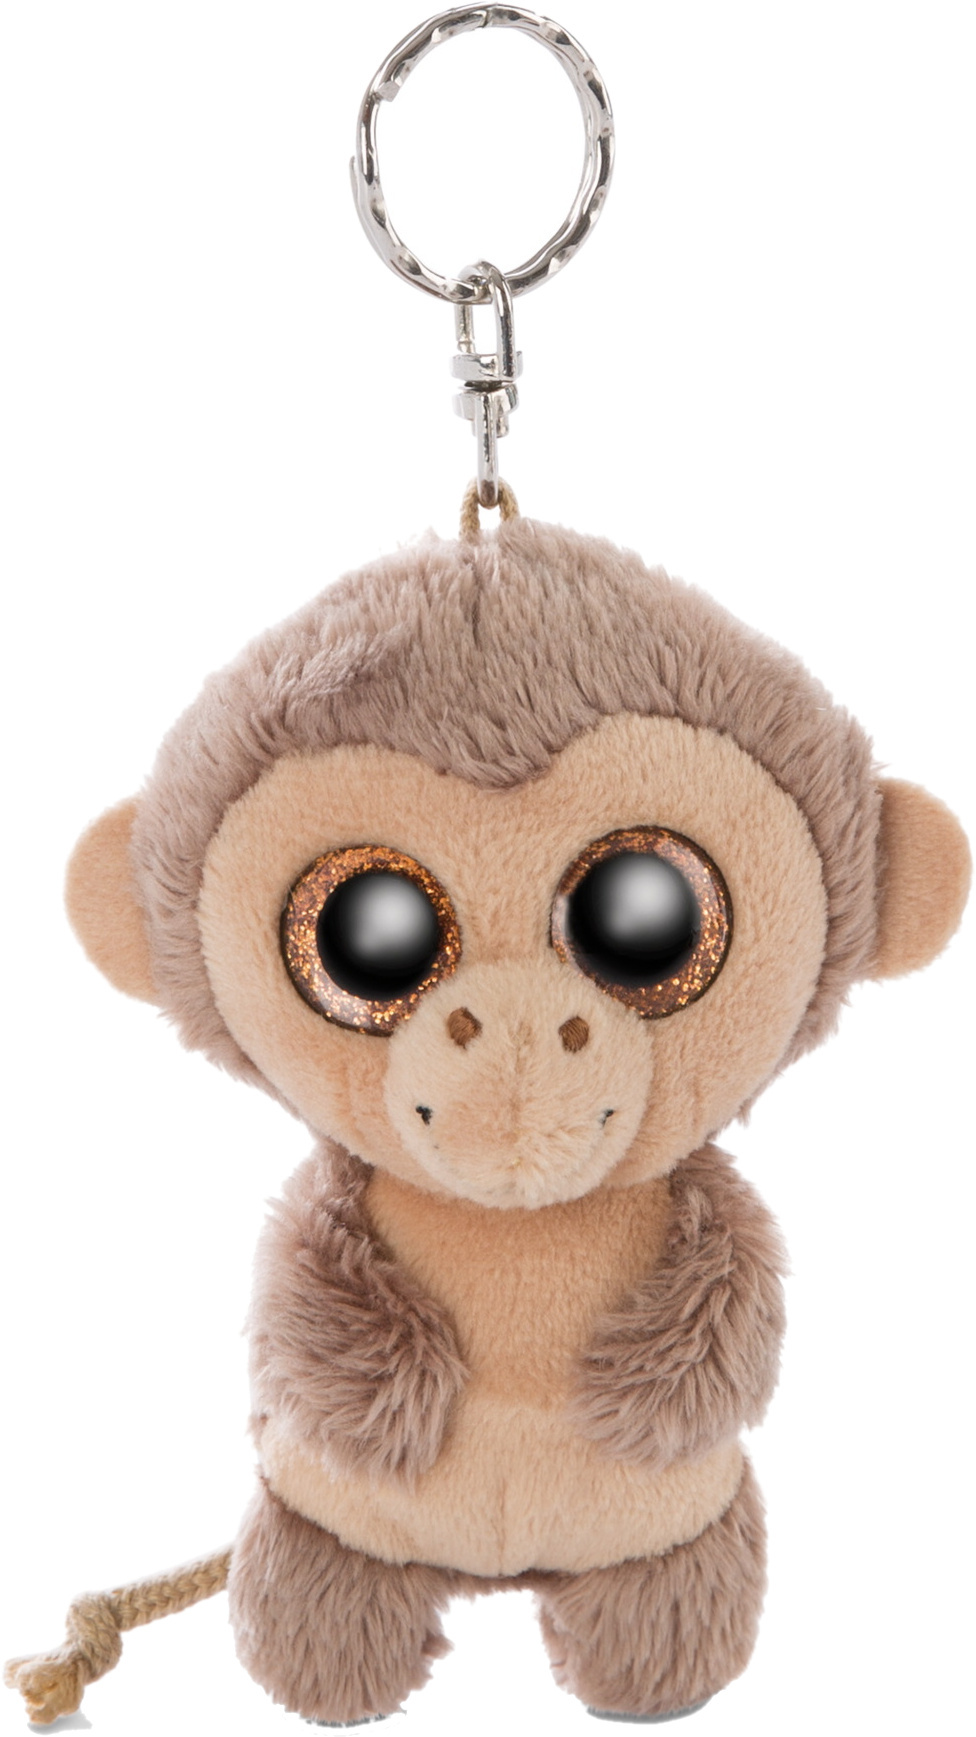 Monkey Hobson Keyholder 9cm